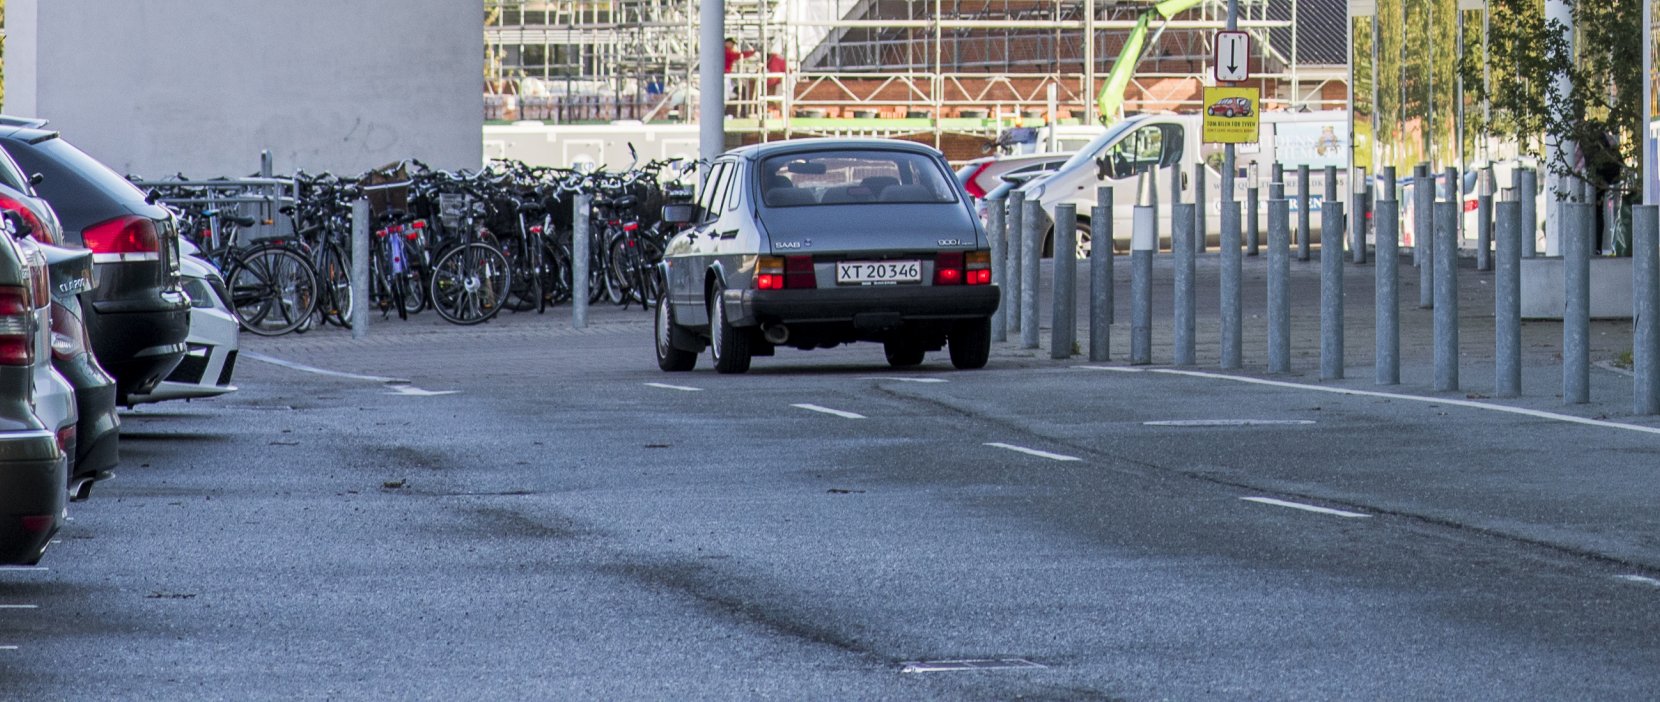 Parkering ved Birkerød Idrætscenter